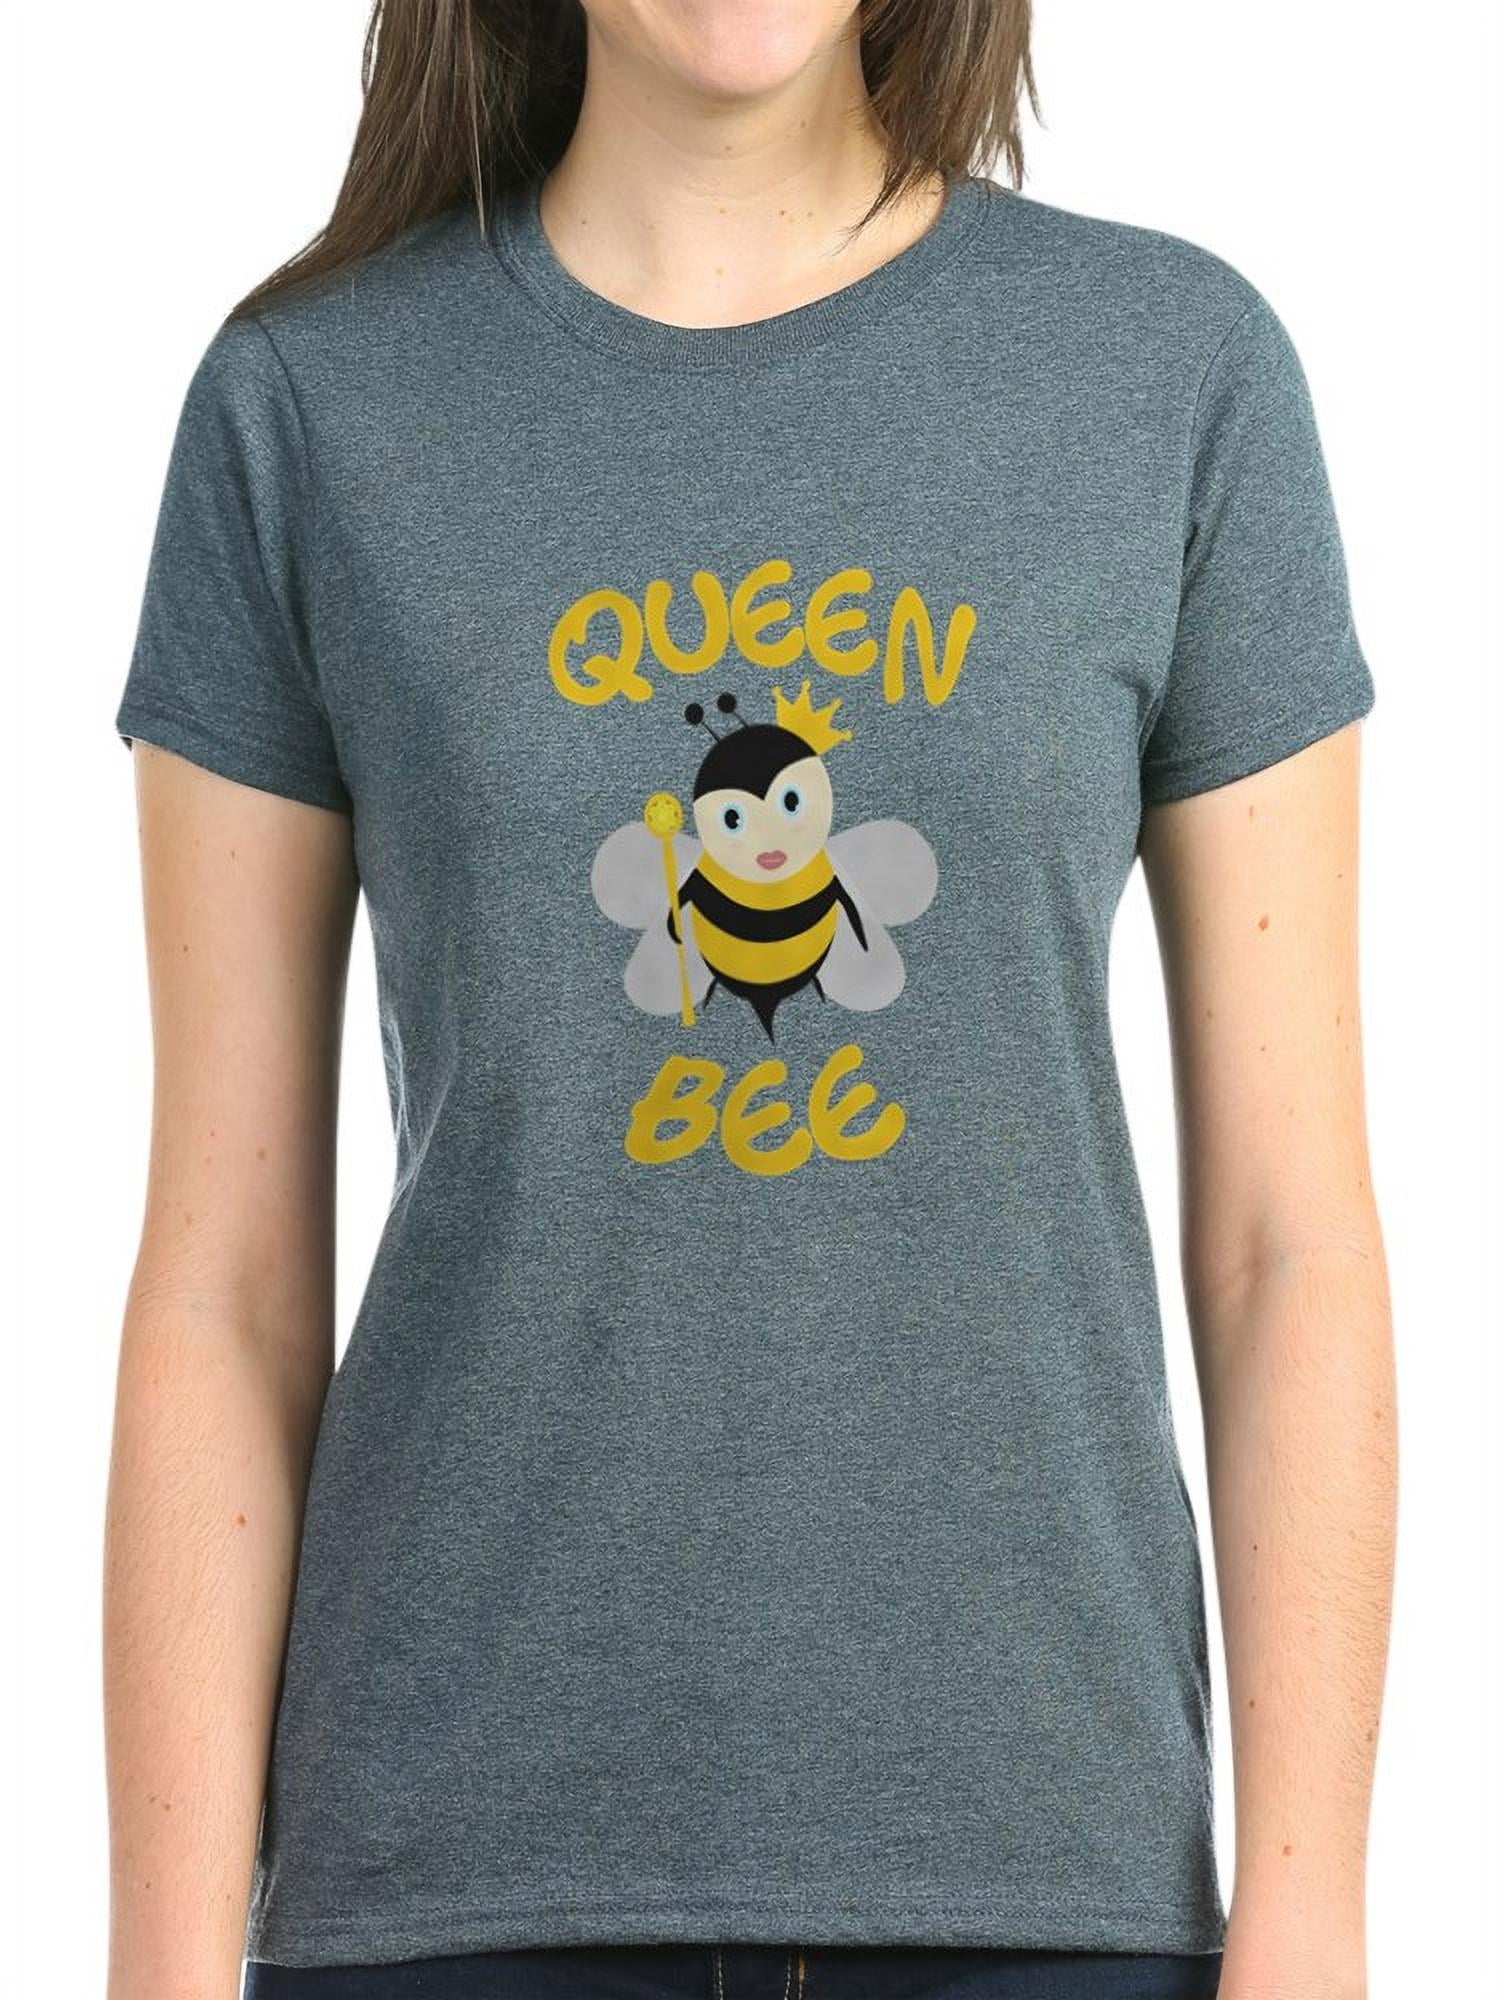 met de klok mee Modderig Belonend CafePress - Queen Bee T Shirt - Women's Dark T-Shirt - Walmart.com